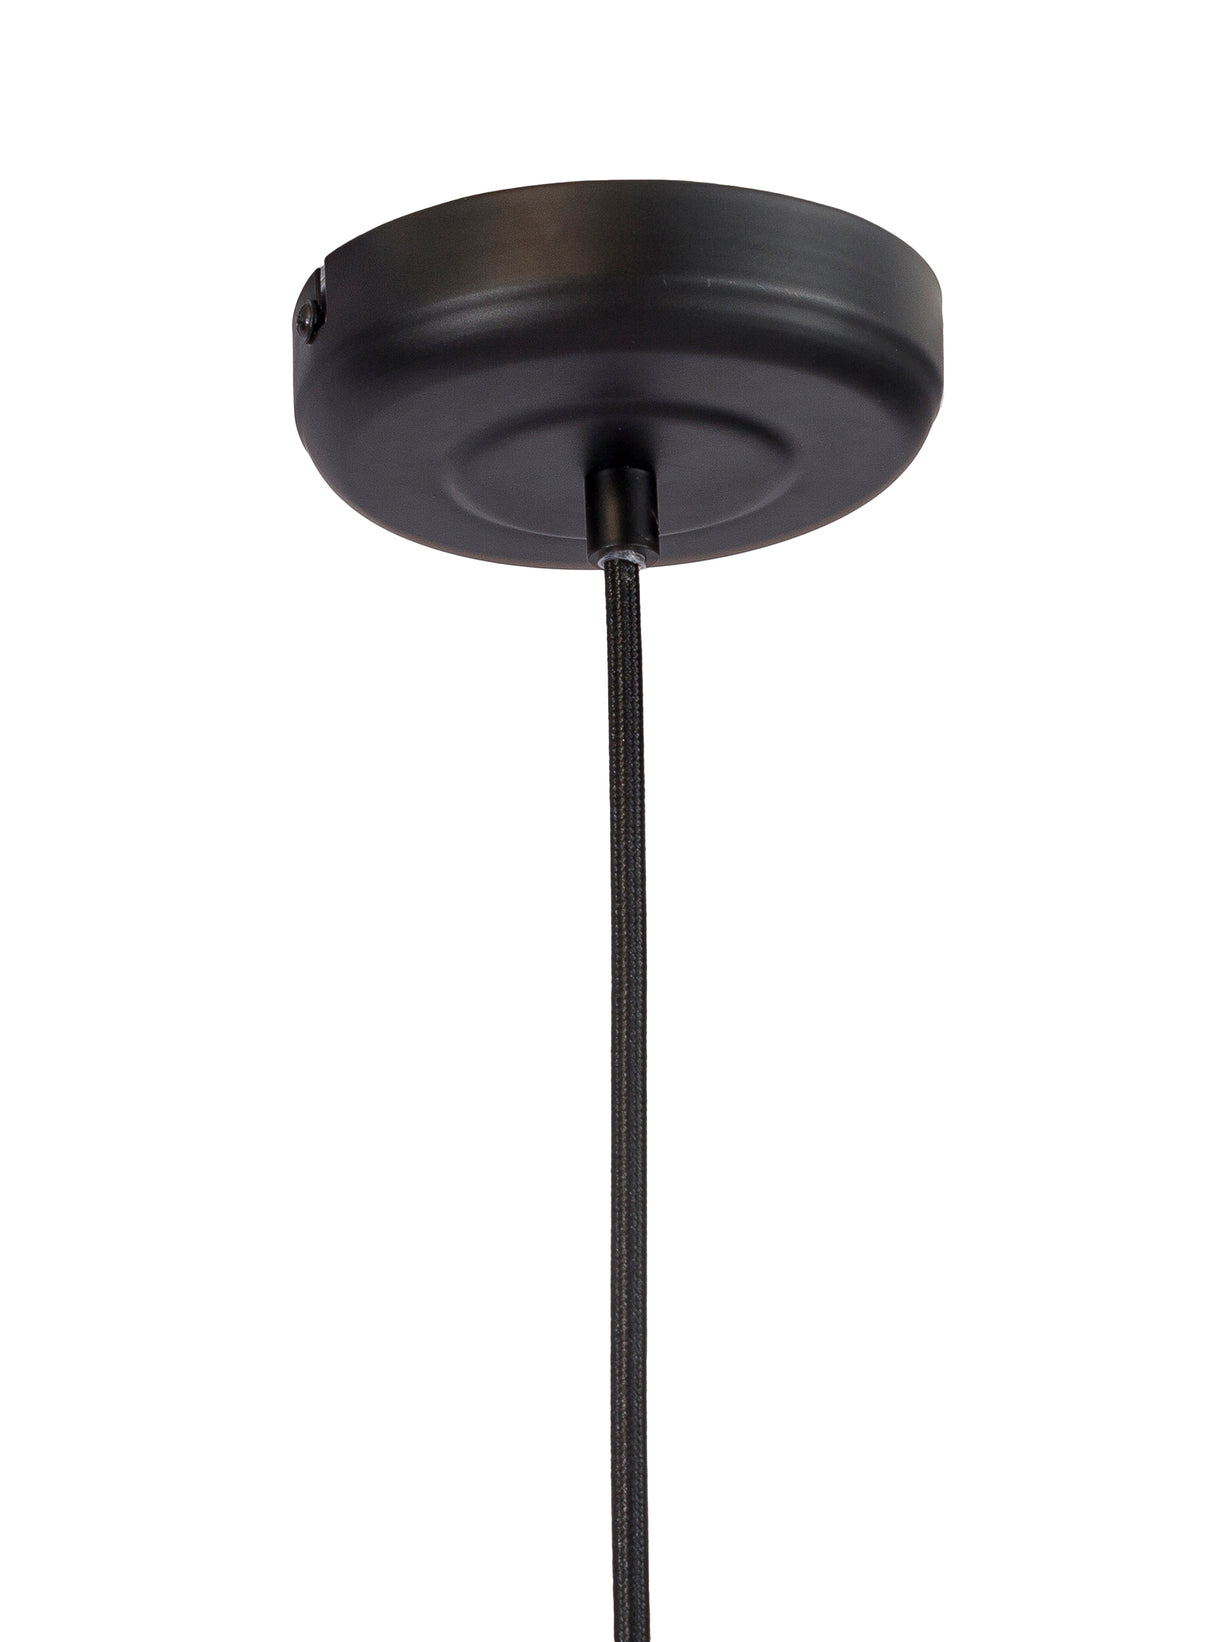 Hanging lamp Sifra Metal Black